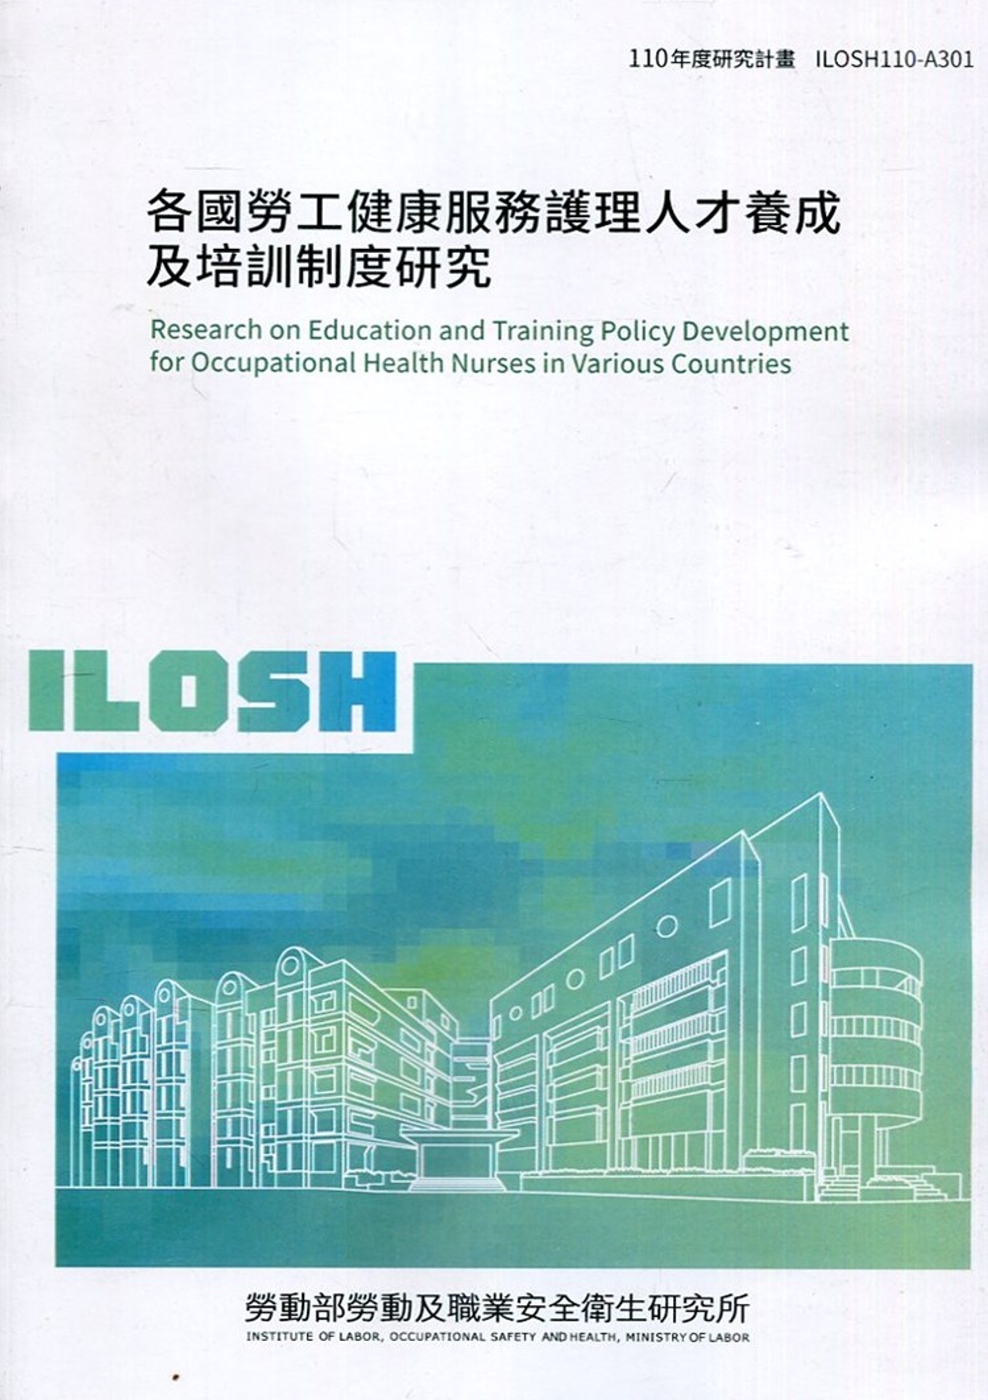 各國勞工健康服務護理人才養成及培訓制度研究 ILOSH110-A301